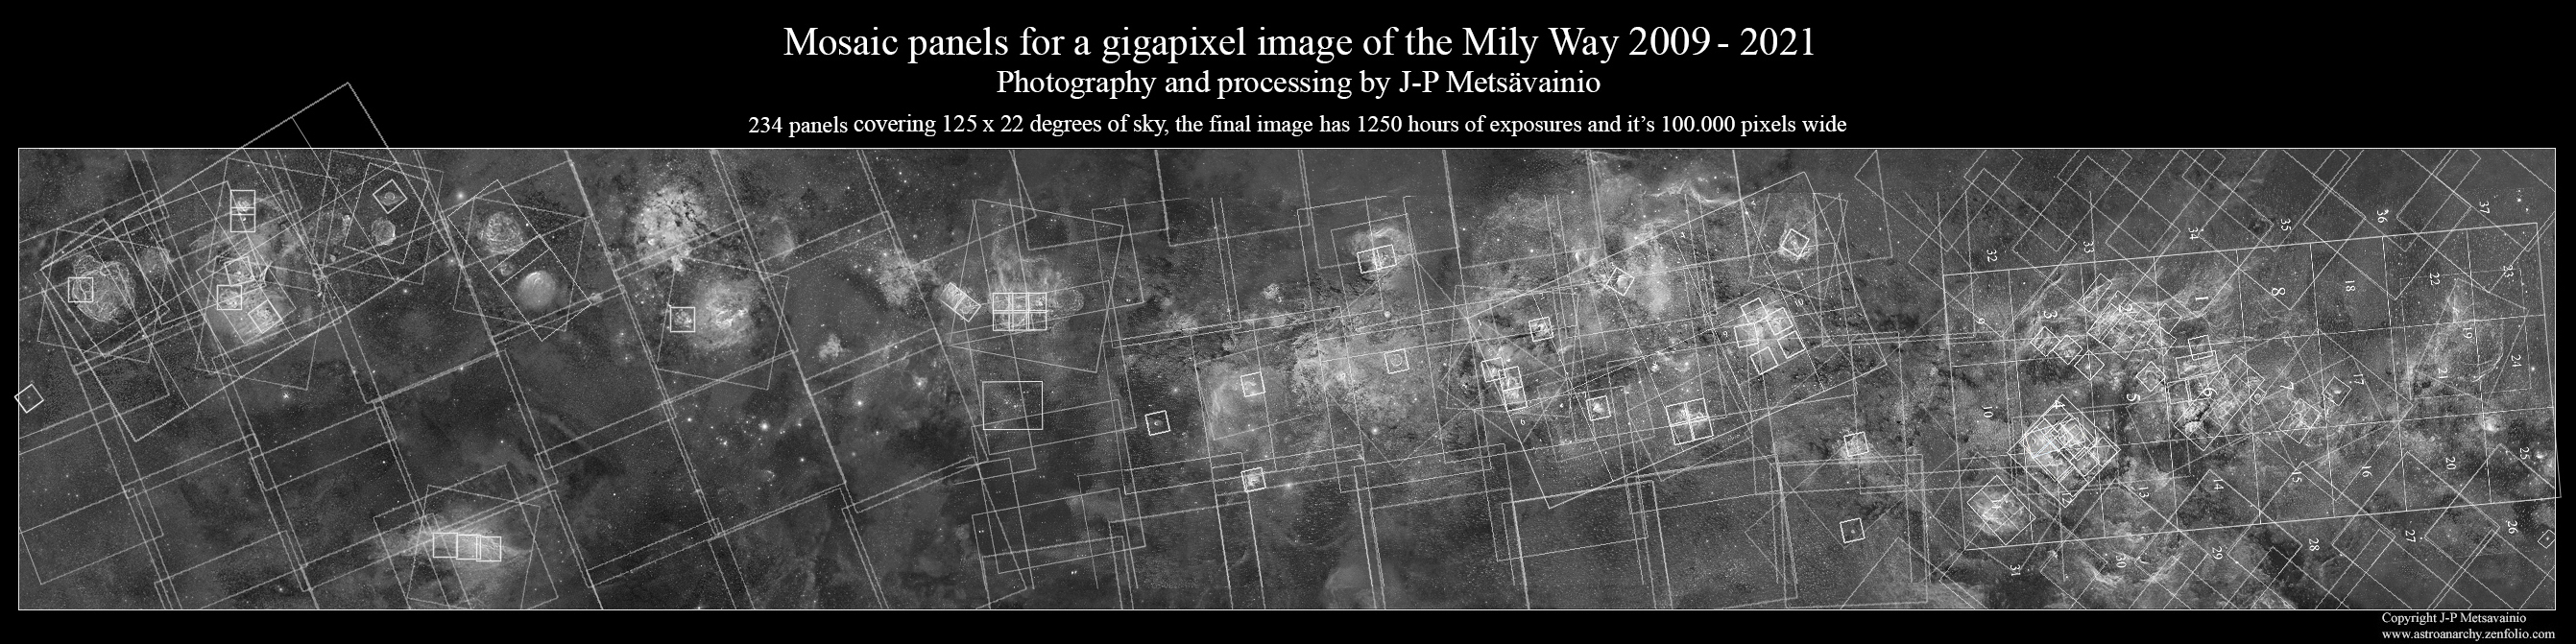 天の川の詳細写真は、12年かけて撮影された234枚の天体写真のモザイク画だという。